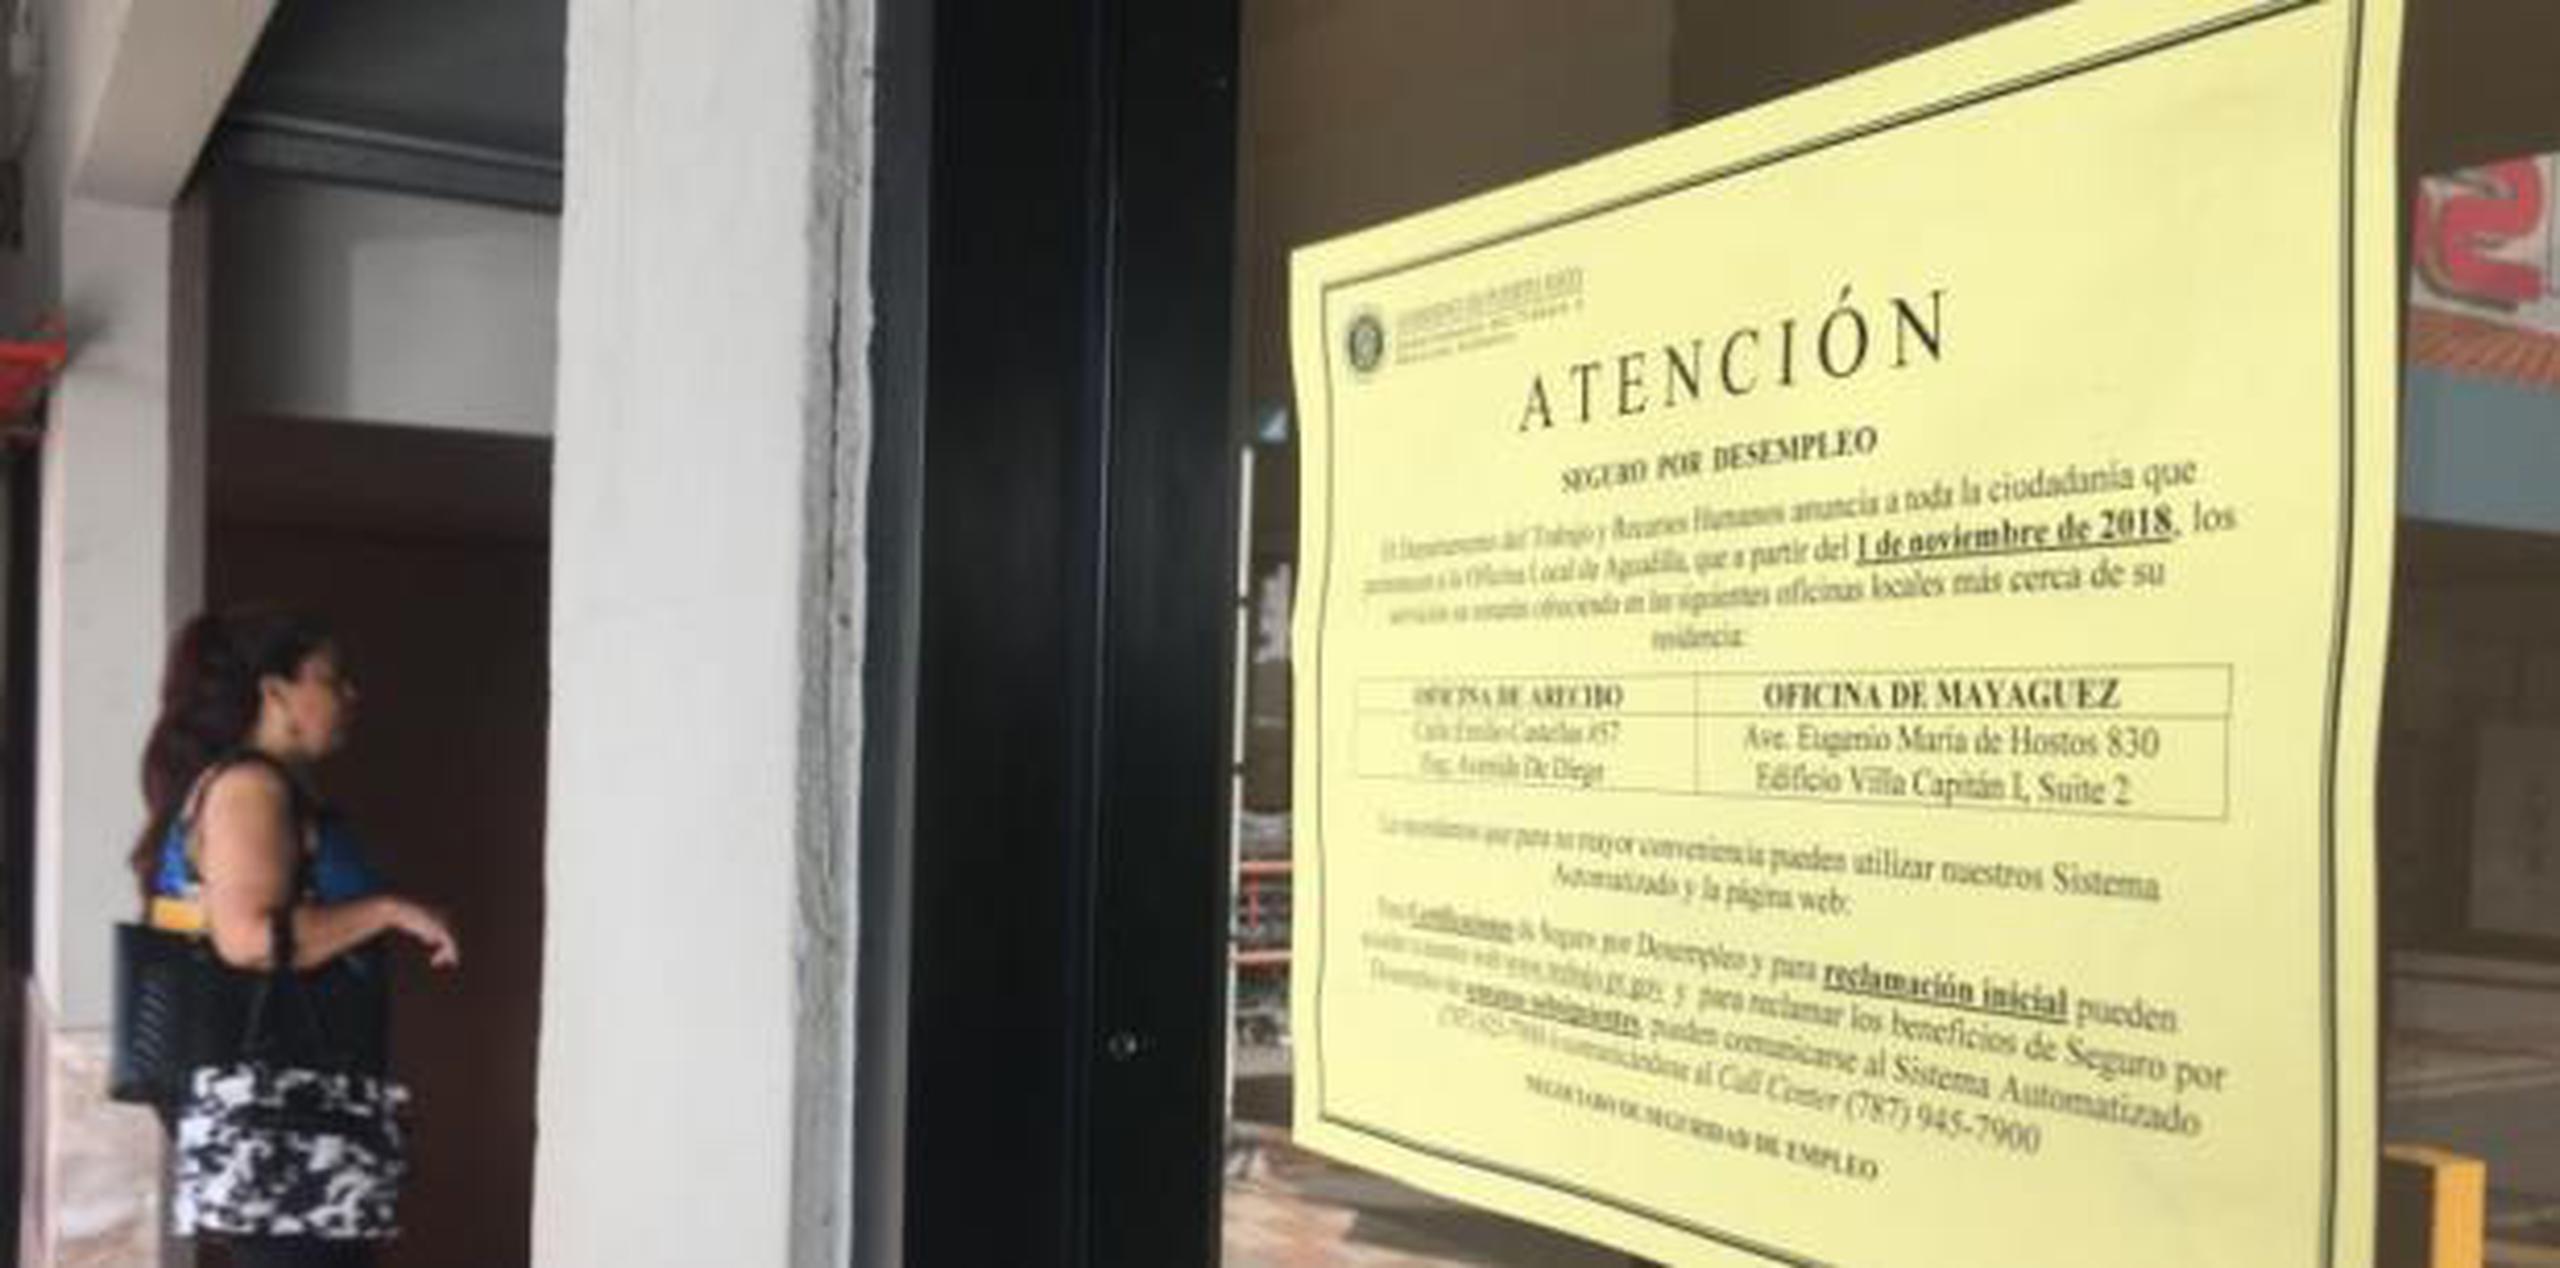 El DTRH confirmó el lunes que su oficina de Aguadilla culminaría sus operaciones el próximo 31 de octubre y, a partir del 1 de noviembre, los ciudadanos tendrían que requerir los servicios en Mayagüez o Arecibo. (Lester Jiménez / Para Primera Hora)